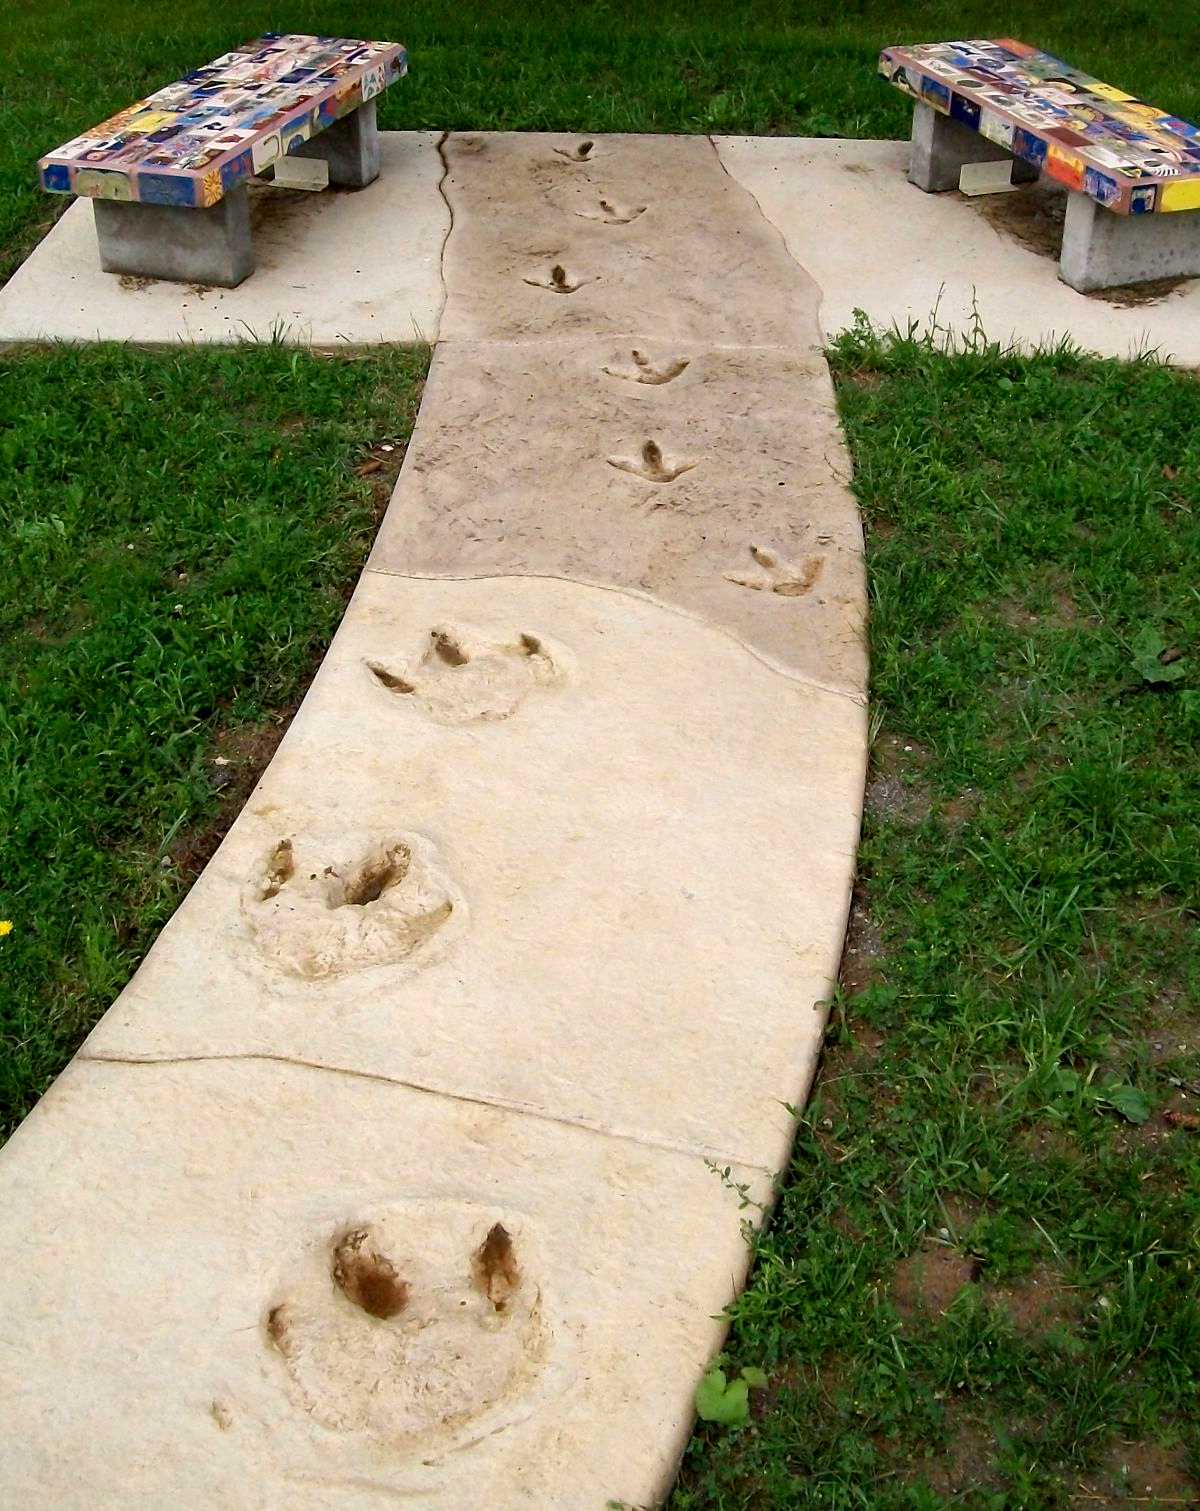 Hadrosaur tracks